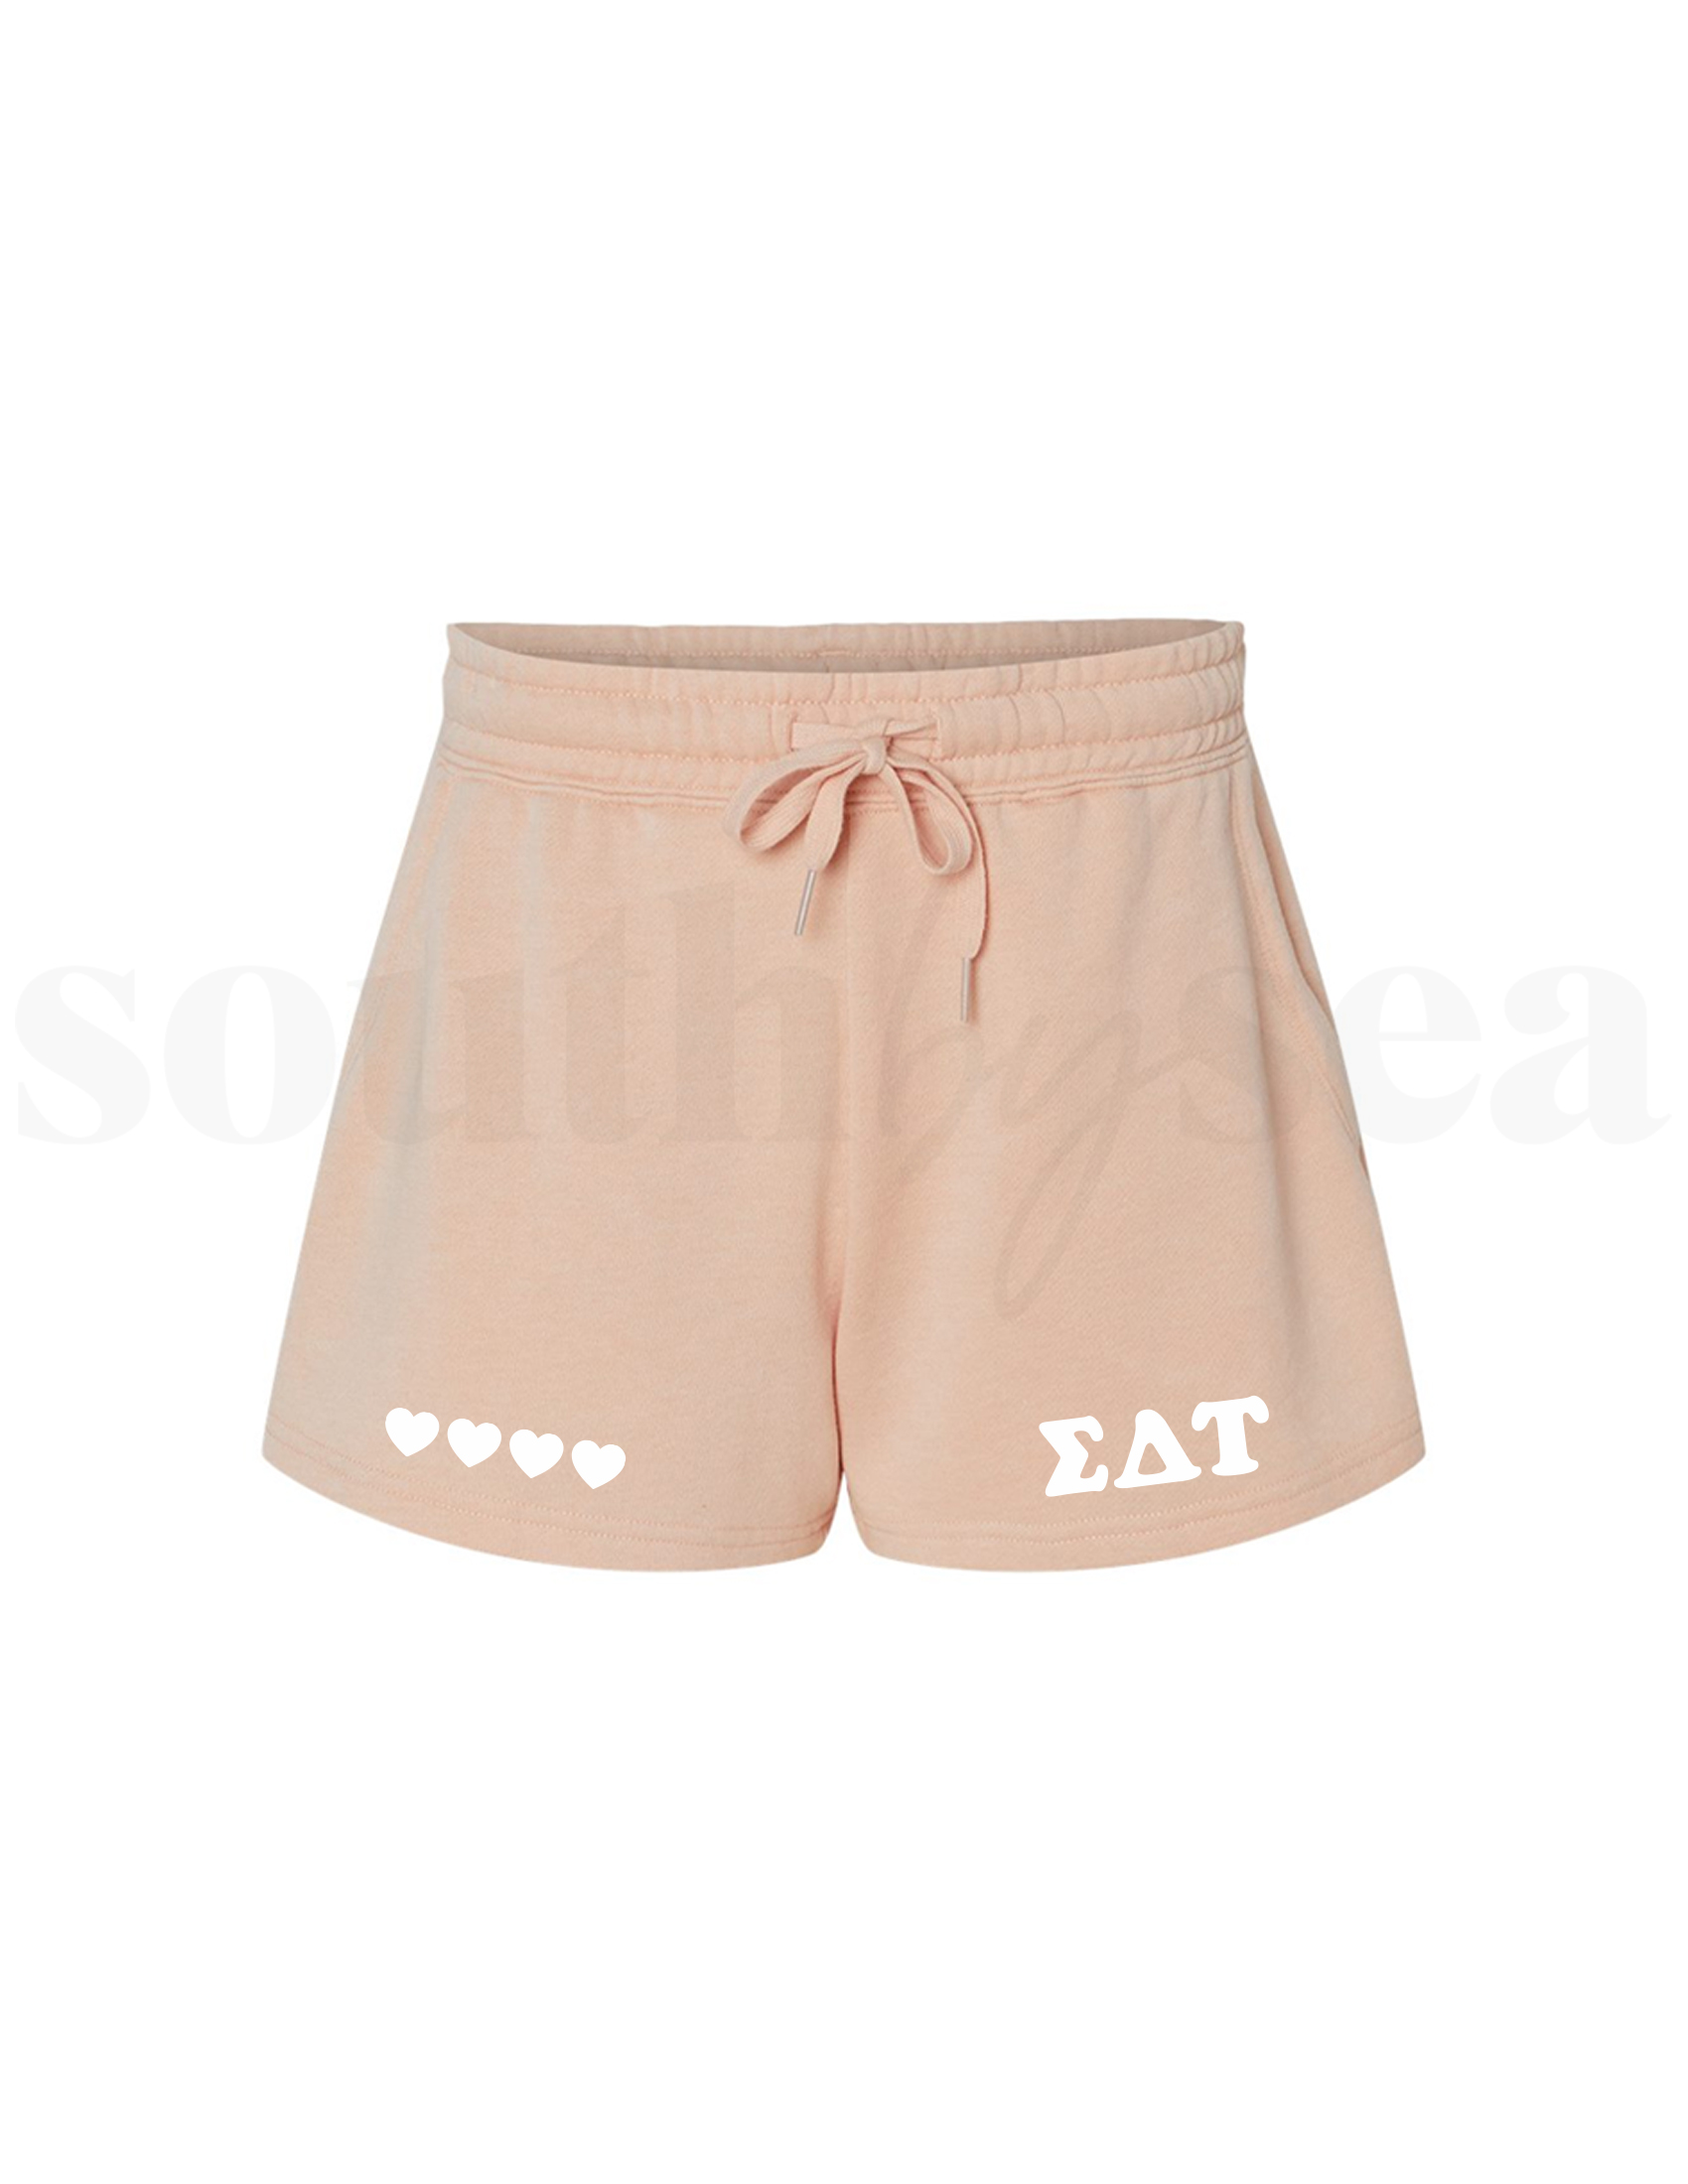 Sigma Delta Tau Blush Shorts